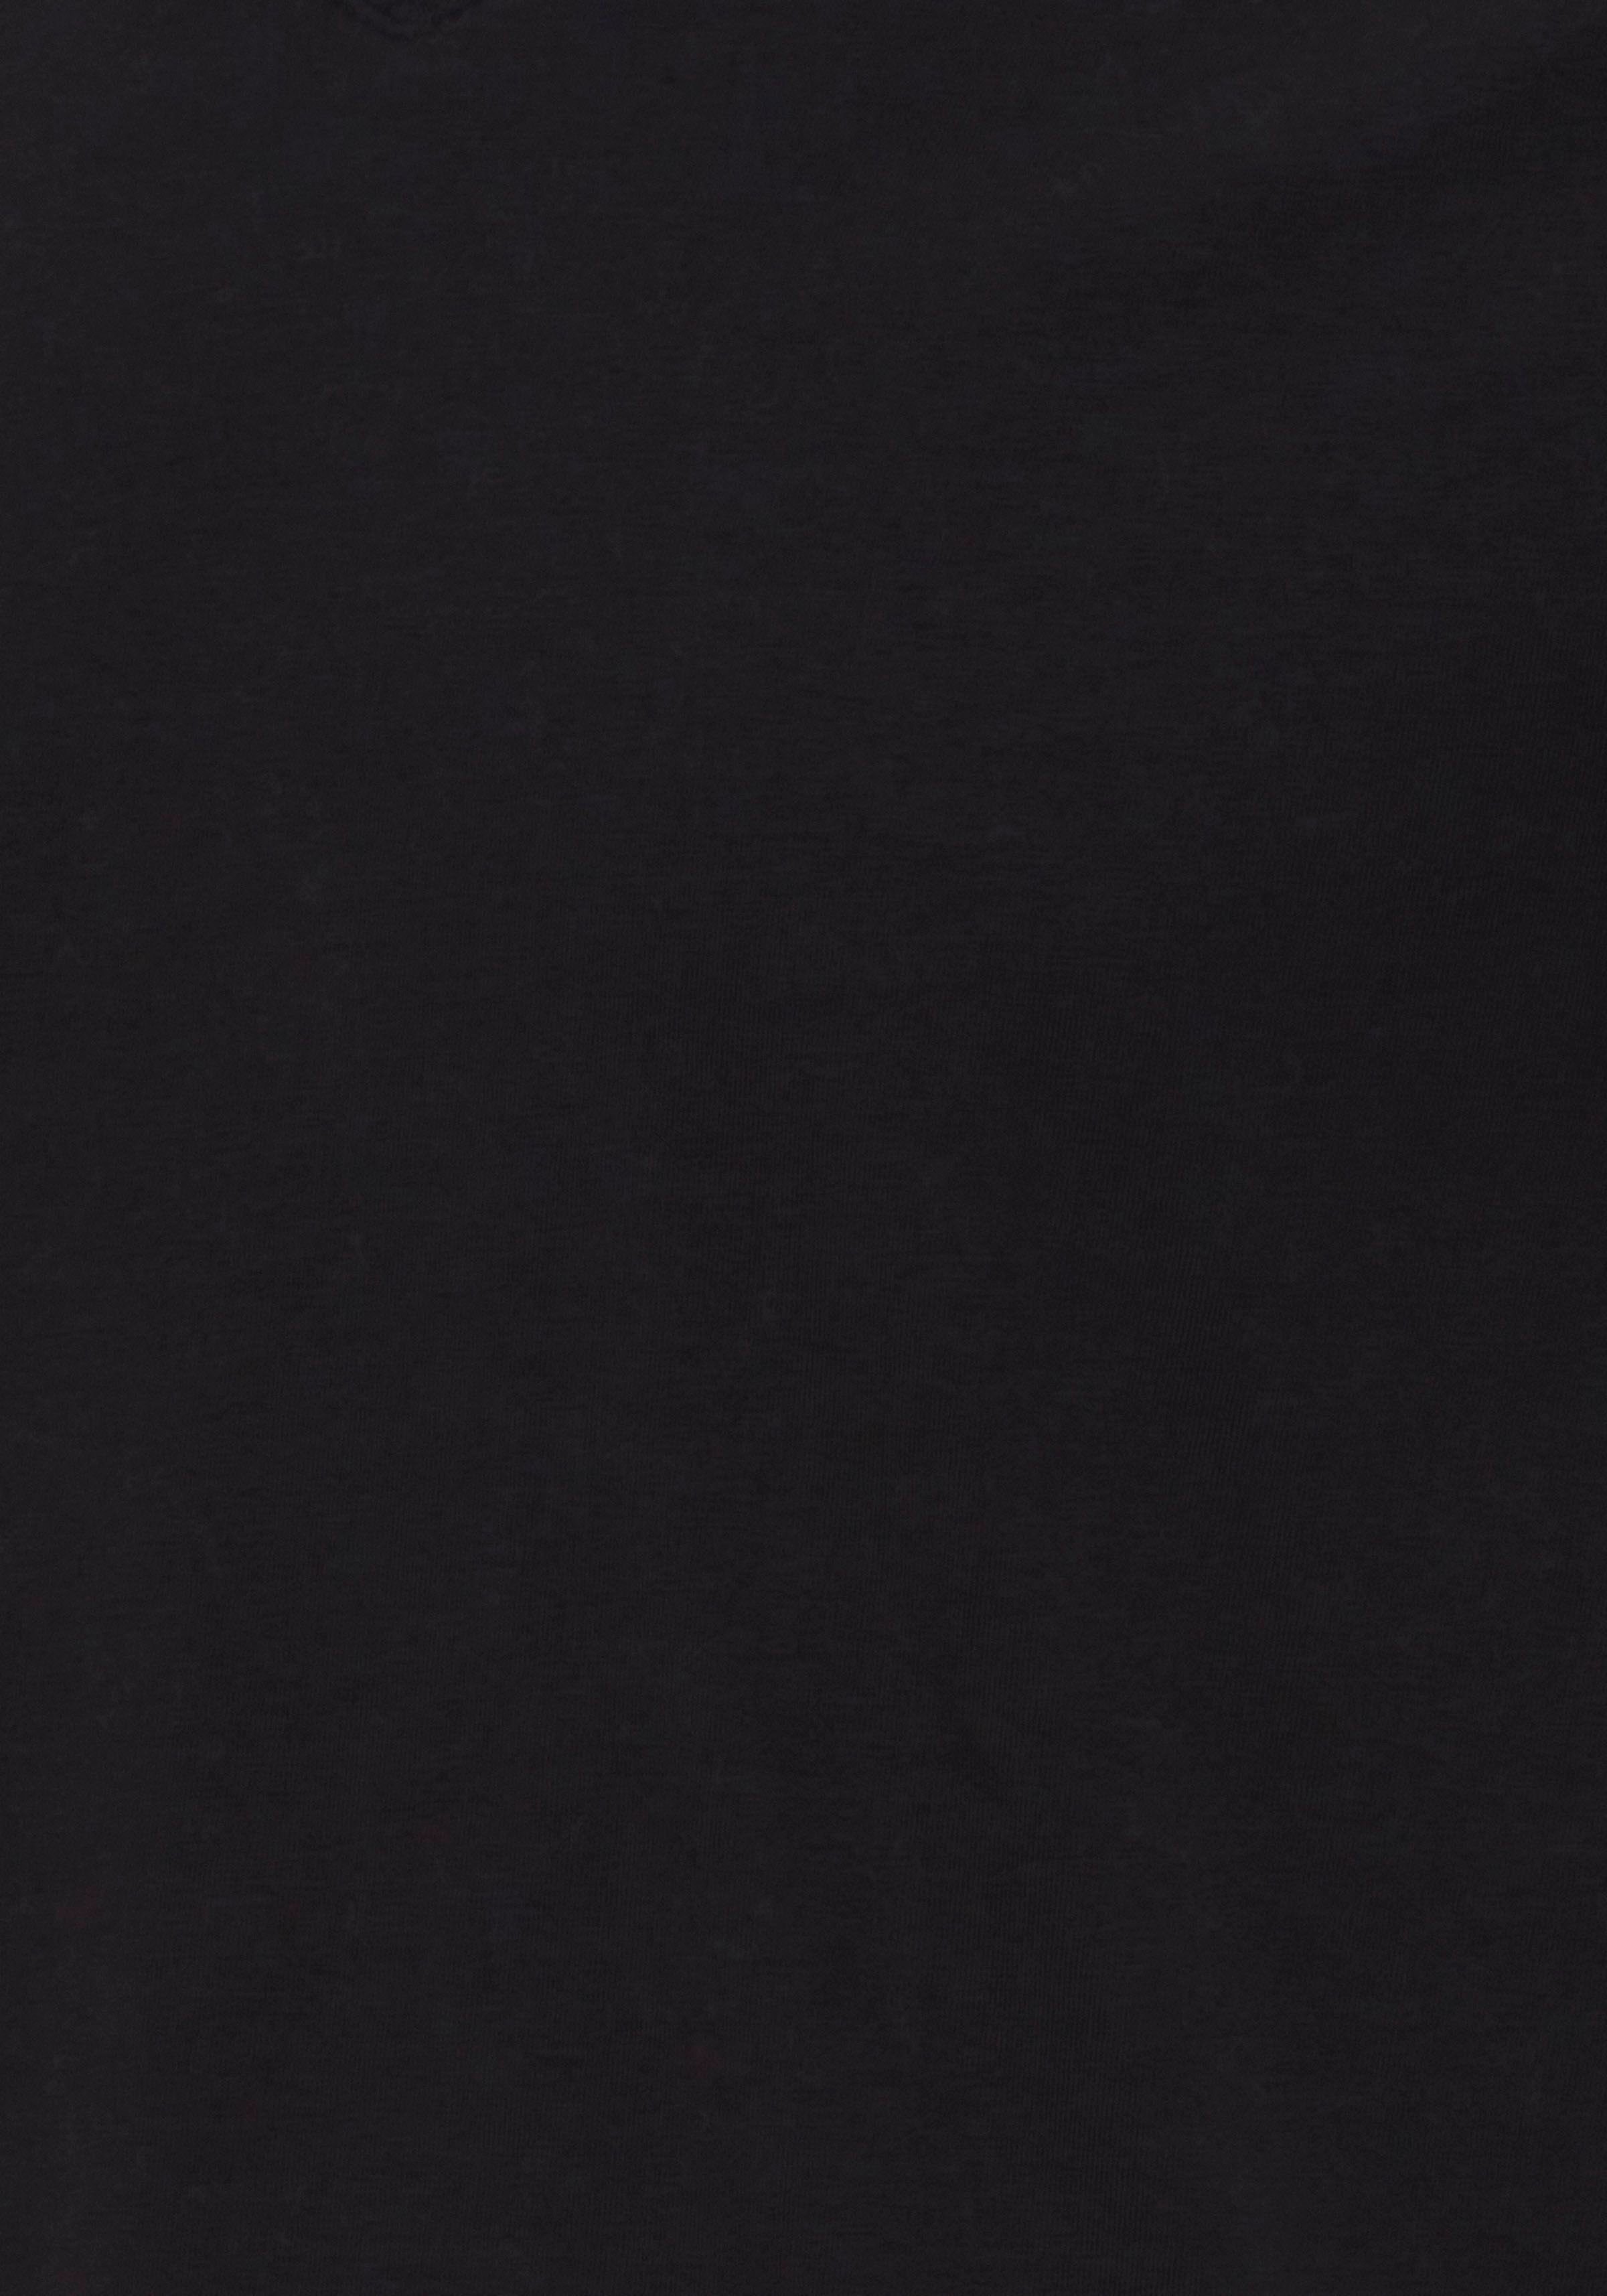 Blend (Packung, 2-tlg., 2er-Pack) T-Shirt BLACK